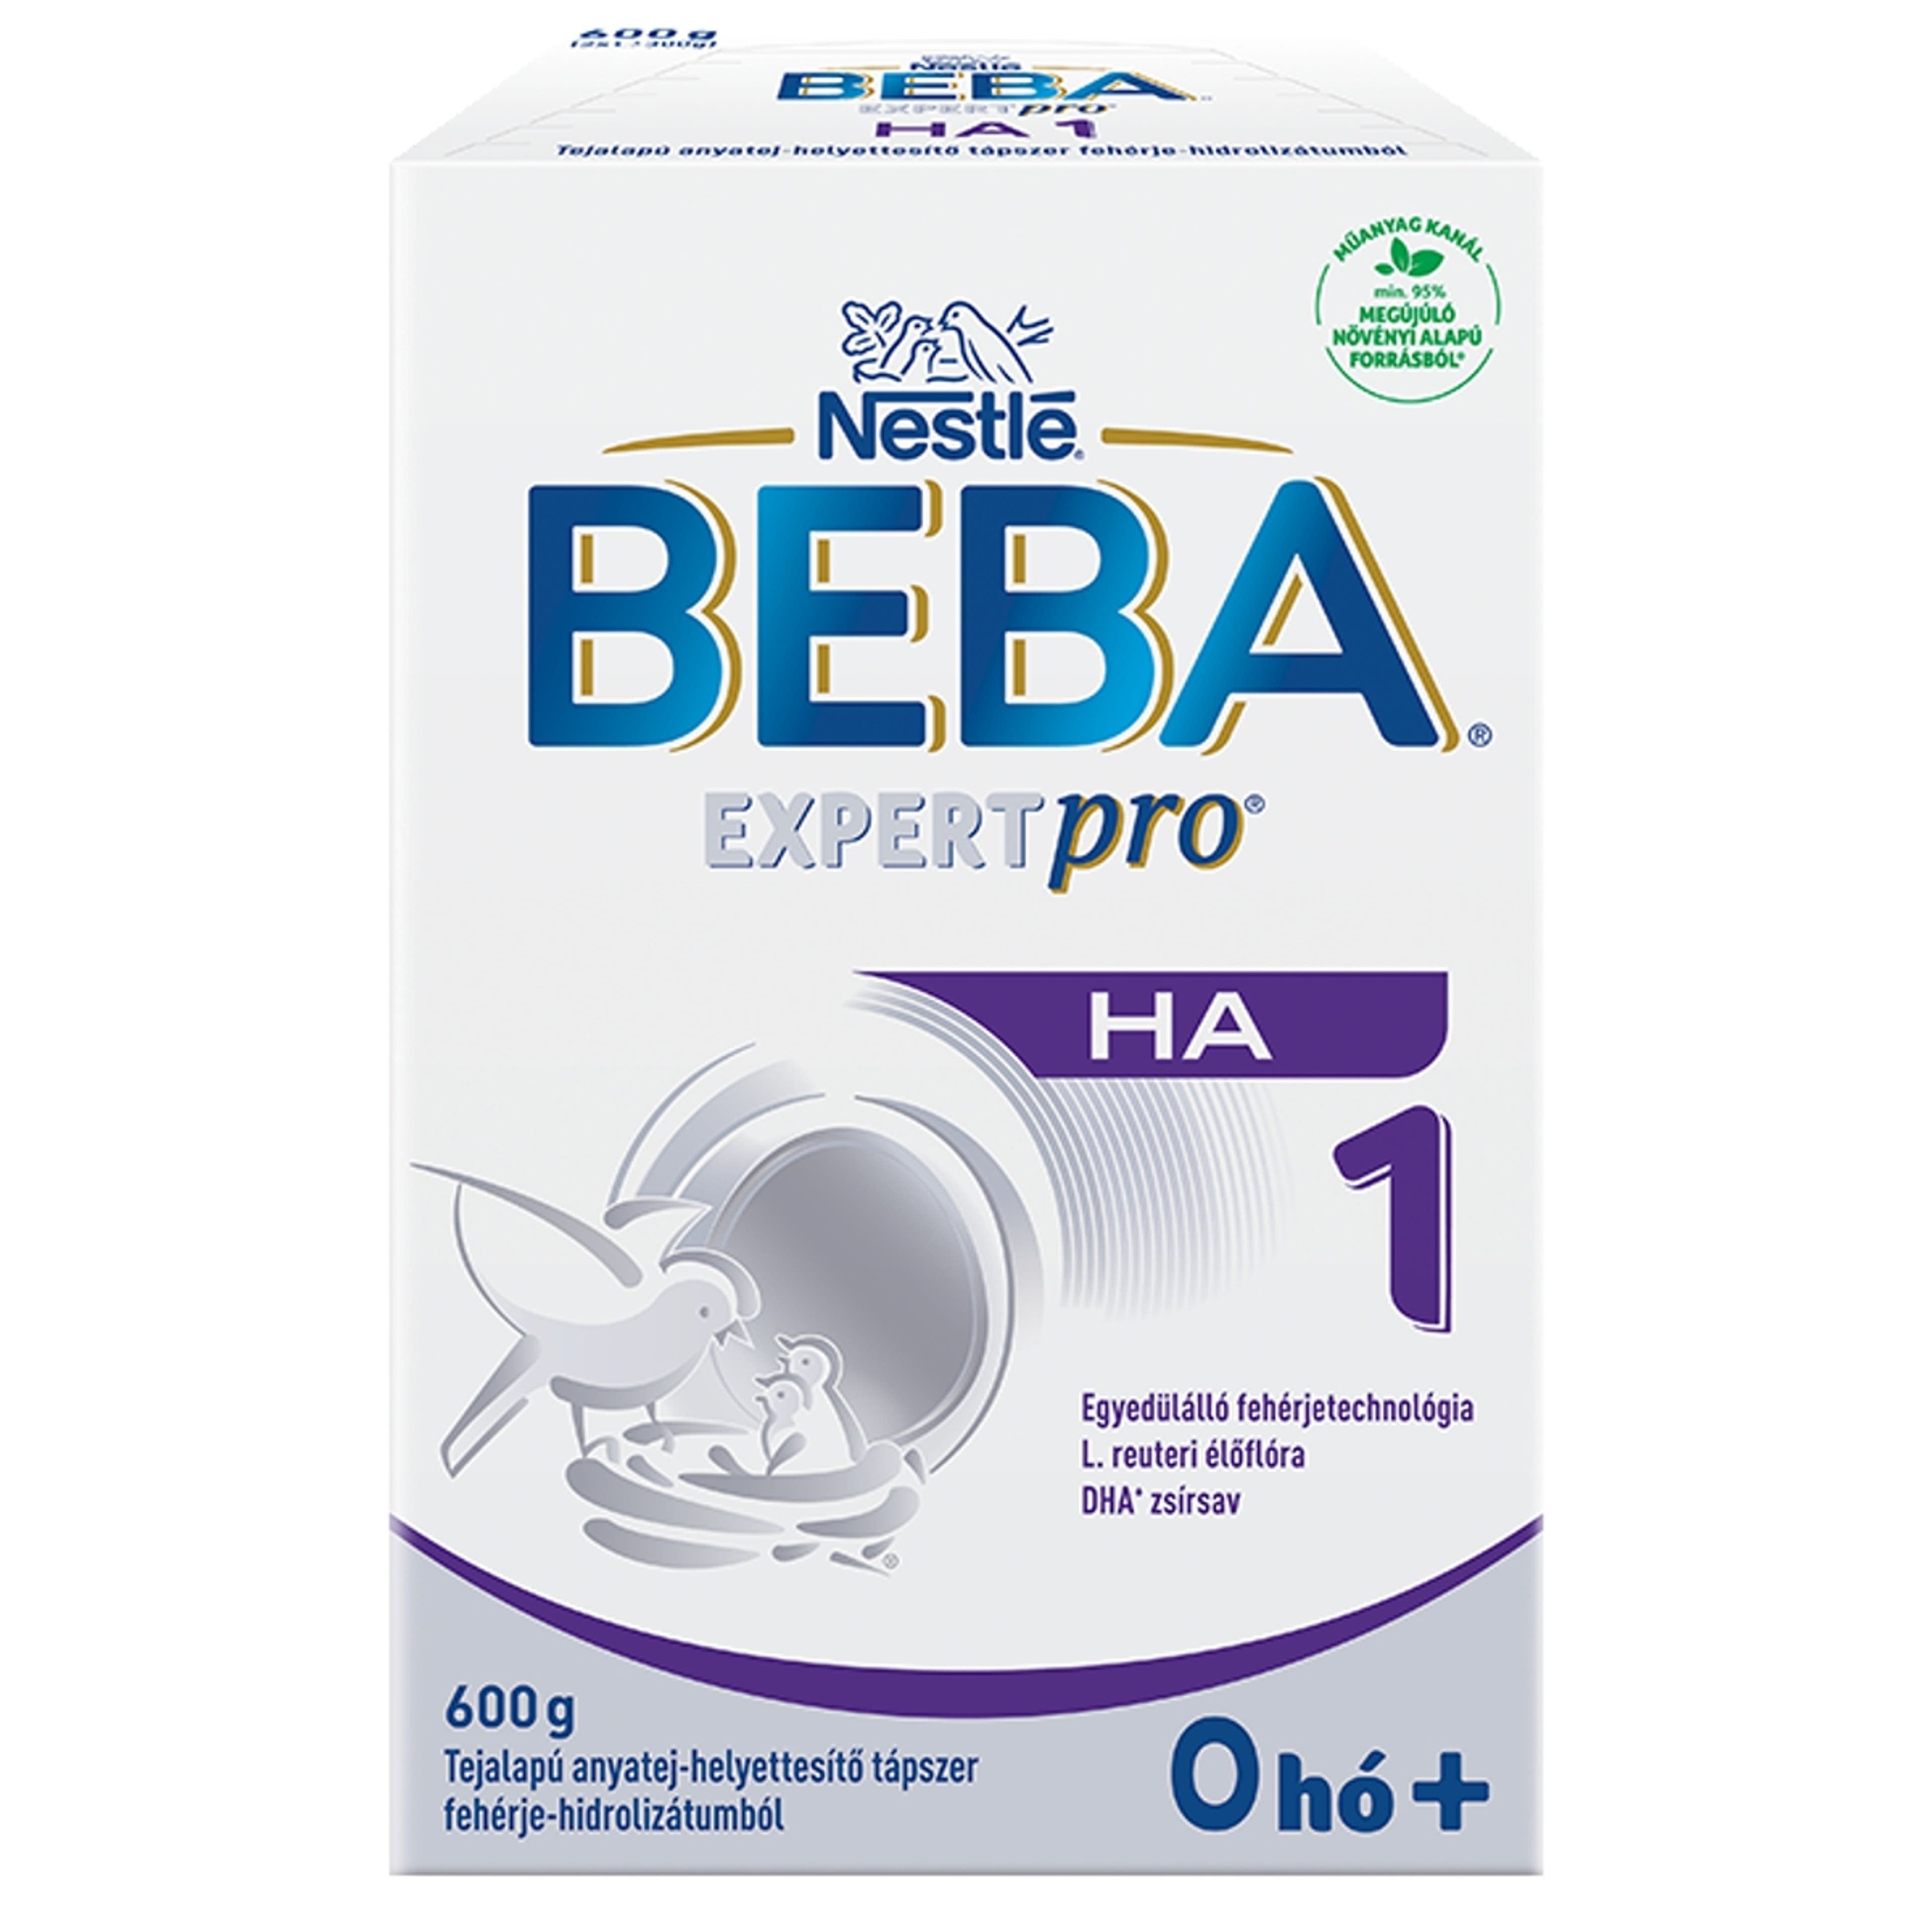 Beba Expertpro HA 1 tejalapú anyatej-helyettesítő tápszer fehérje-hidrolizátumból 0 hónapos kortól - 600 g